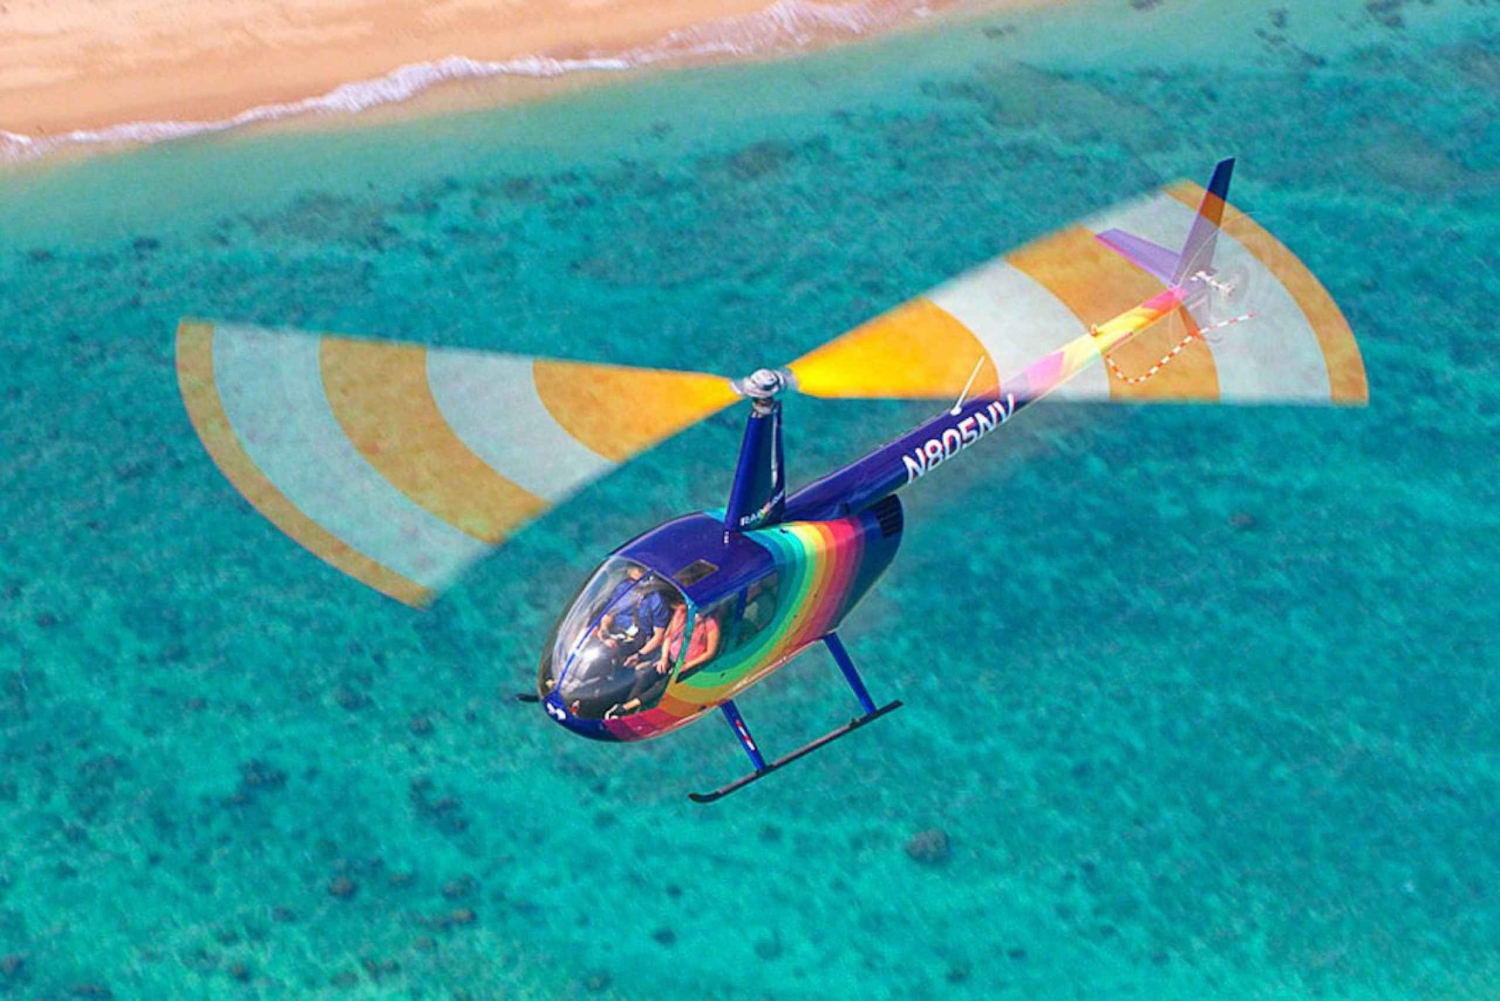 Oahu: camino a las puertas de 30 minutos de Pali, viaje en helicóptero o fuera de él